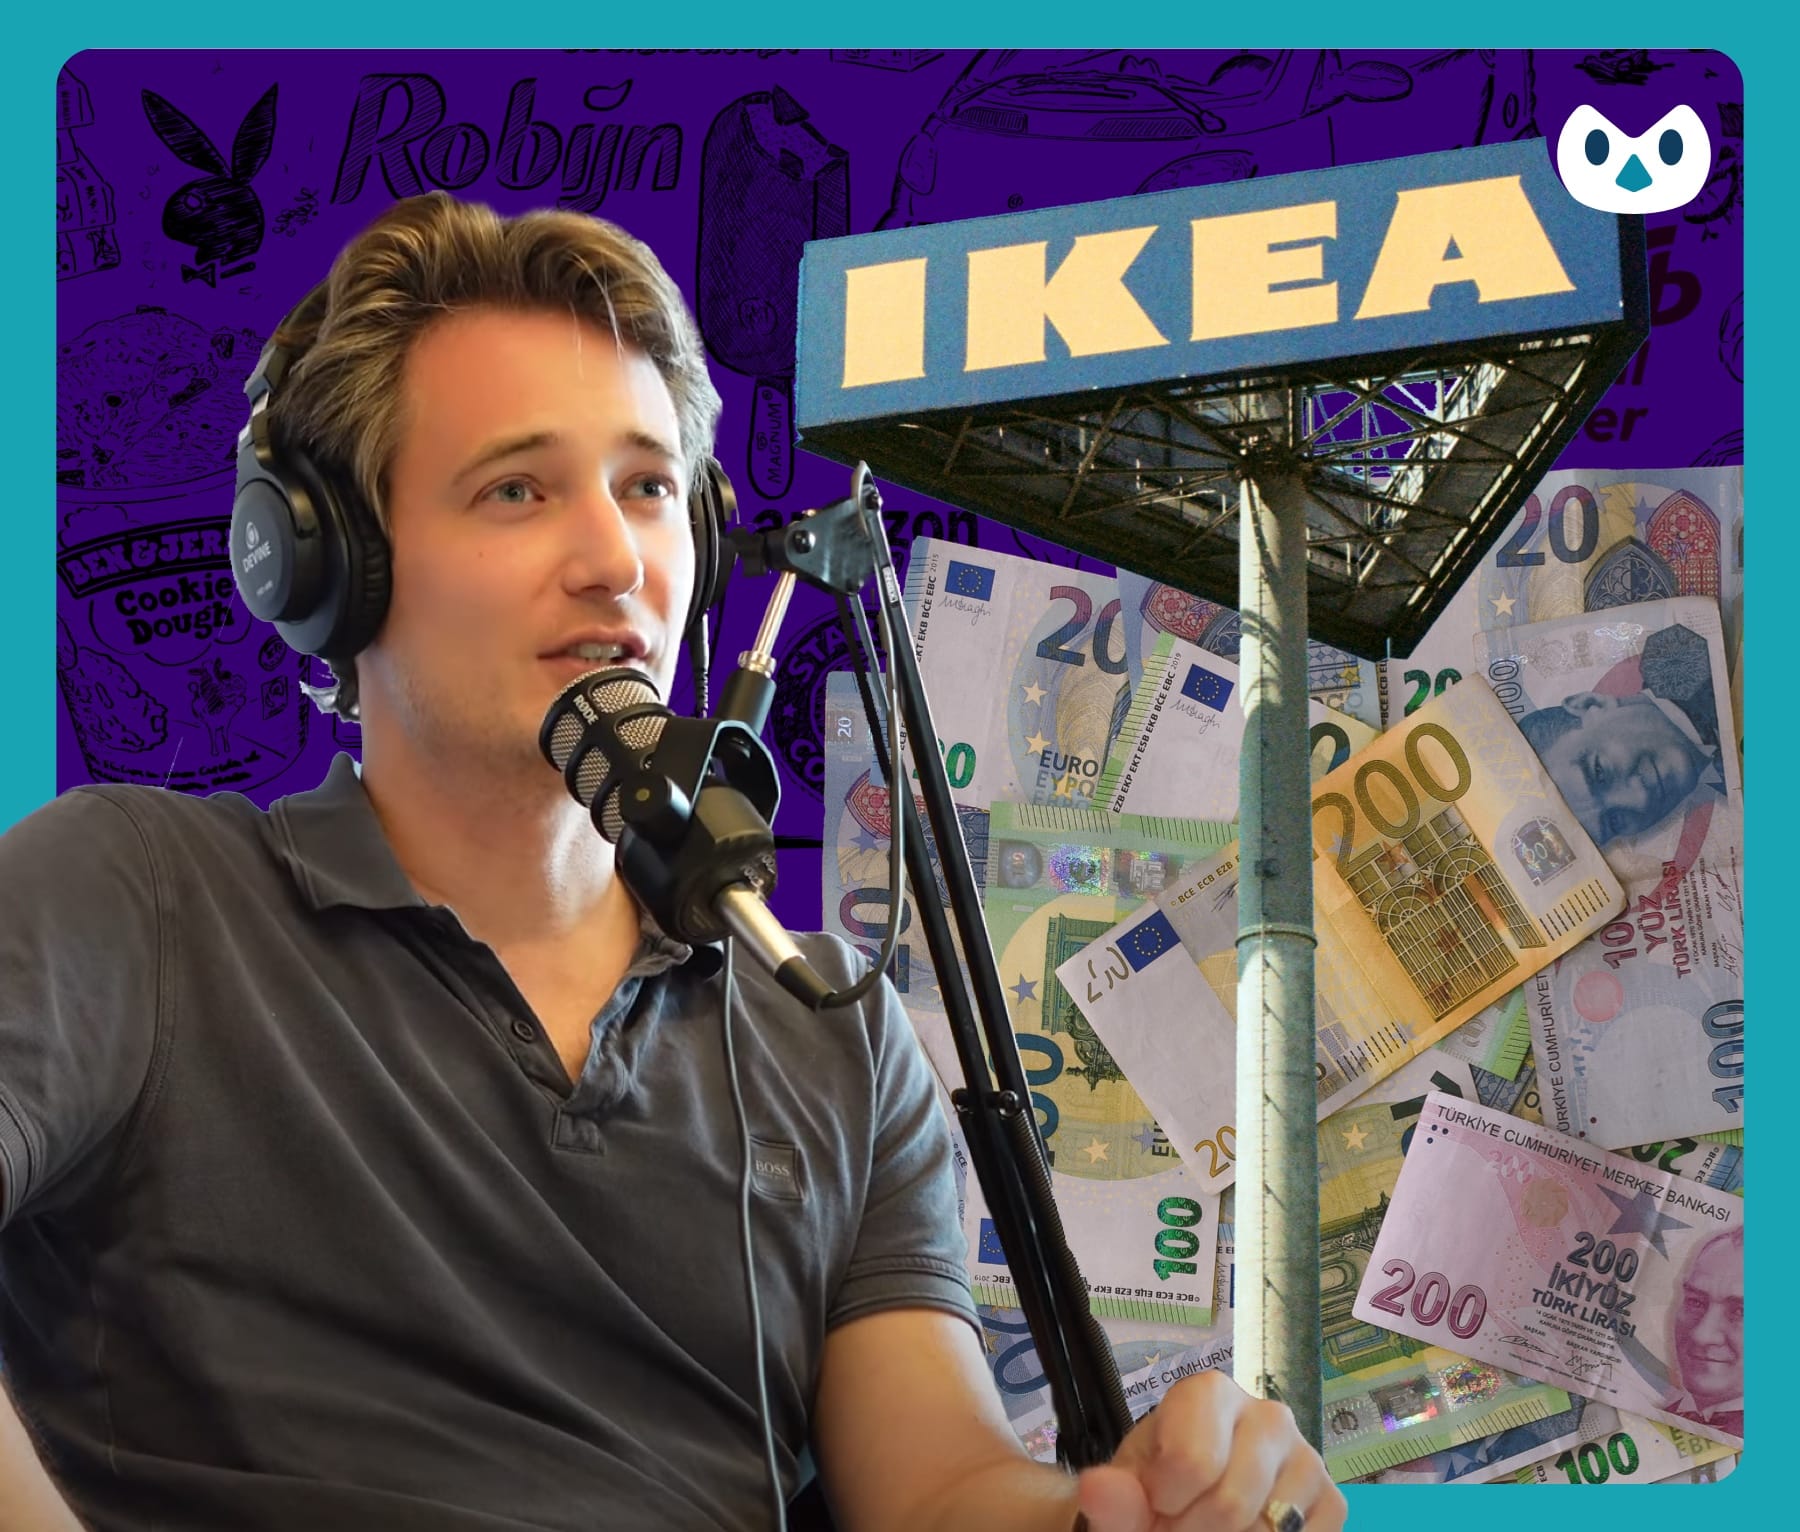 IKEA het bedrijf van de echte Dagobert Duck? – Podcast EP9